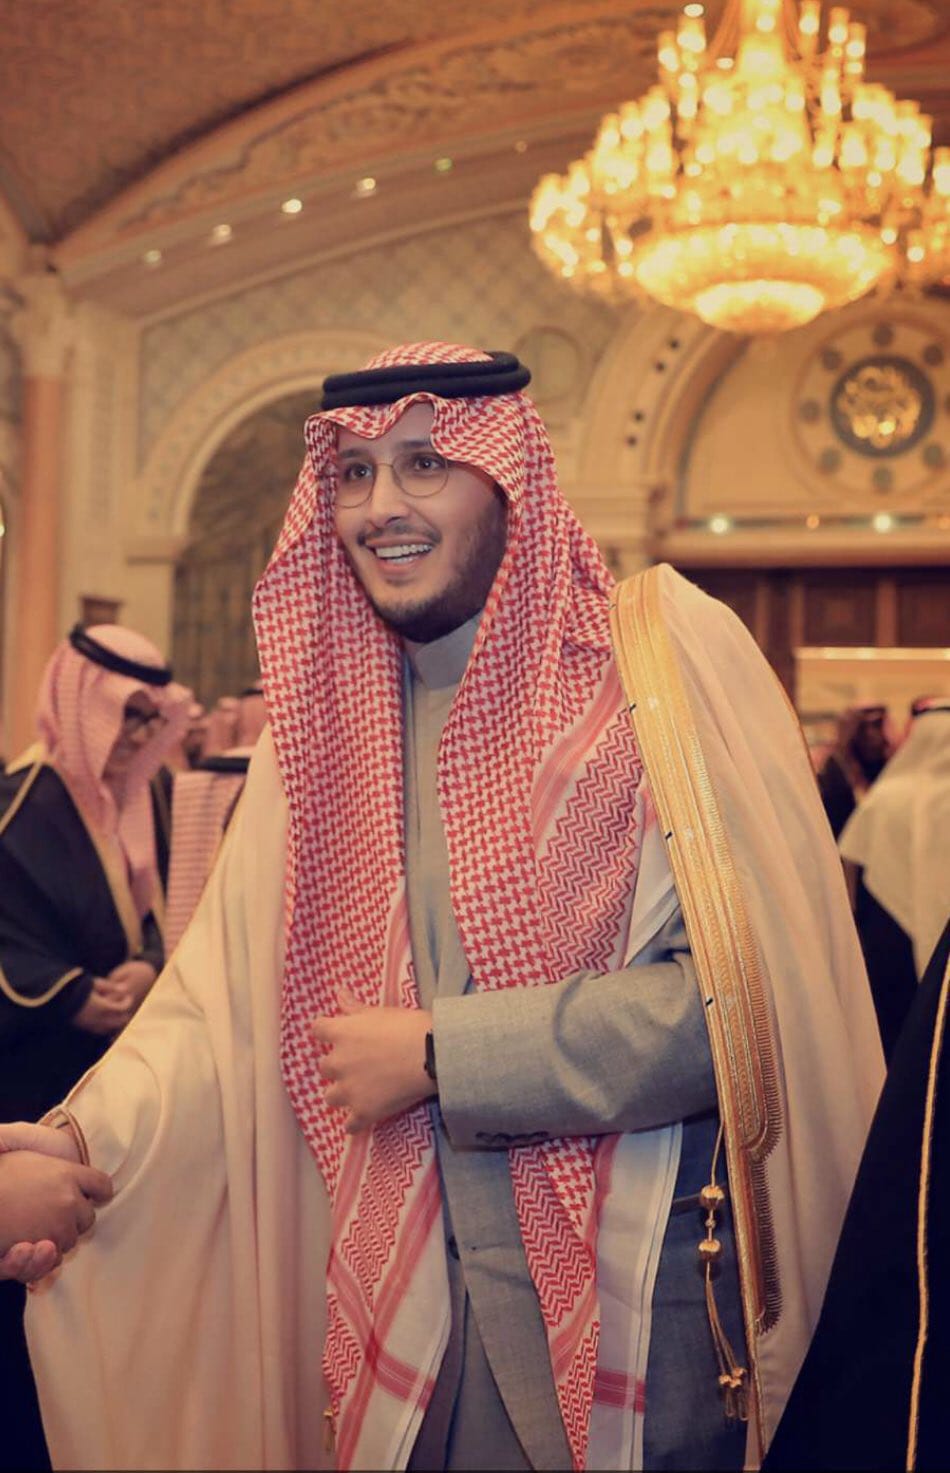 الأمير أحمد بن فهد بن سلمان يجري عمليه جراحية تكللت بالنجاح - حصاد نت